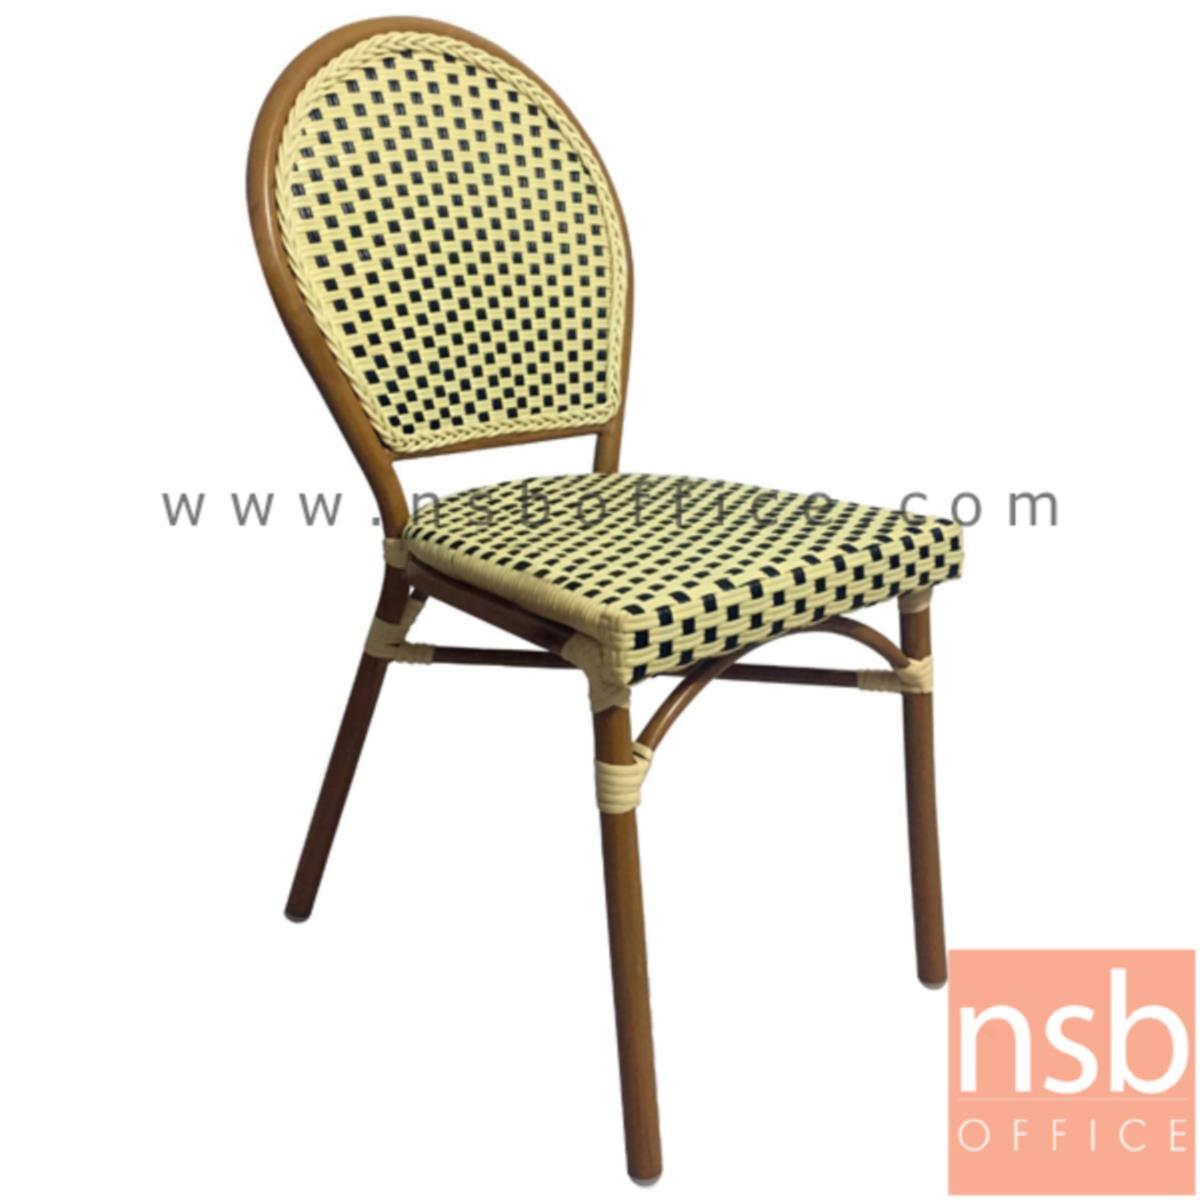 เก้าอี้สนามหวายเทียมสาน รุ่น General lite ไม่มีท้าวแขน (ใช้กับโต๊ะหวายฯ รุ่น G08A235)   